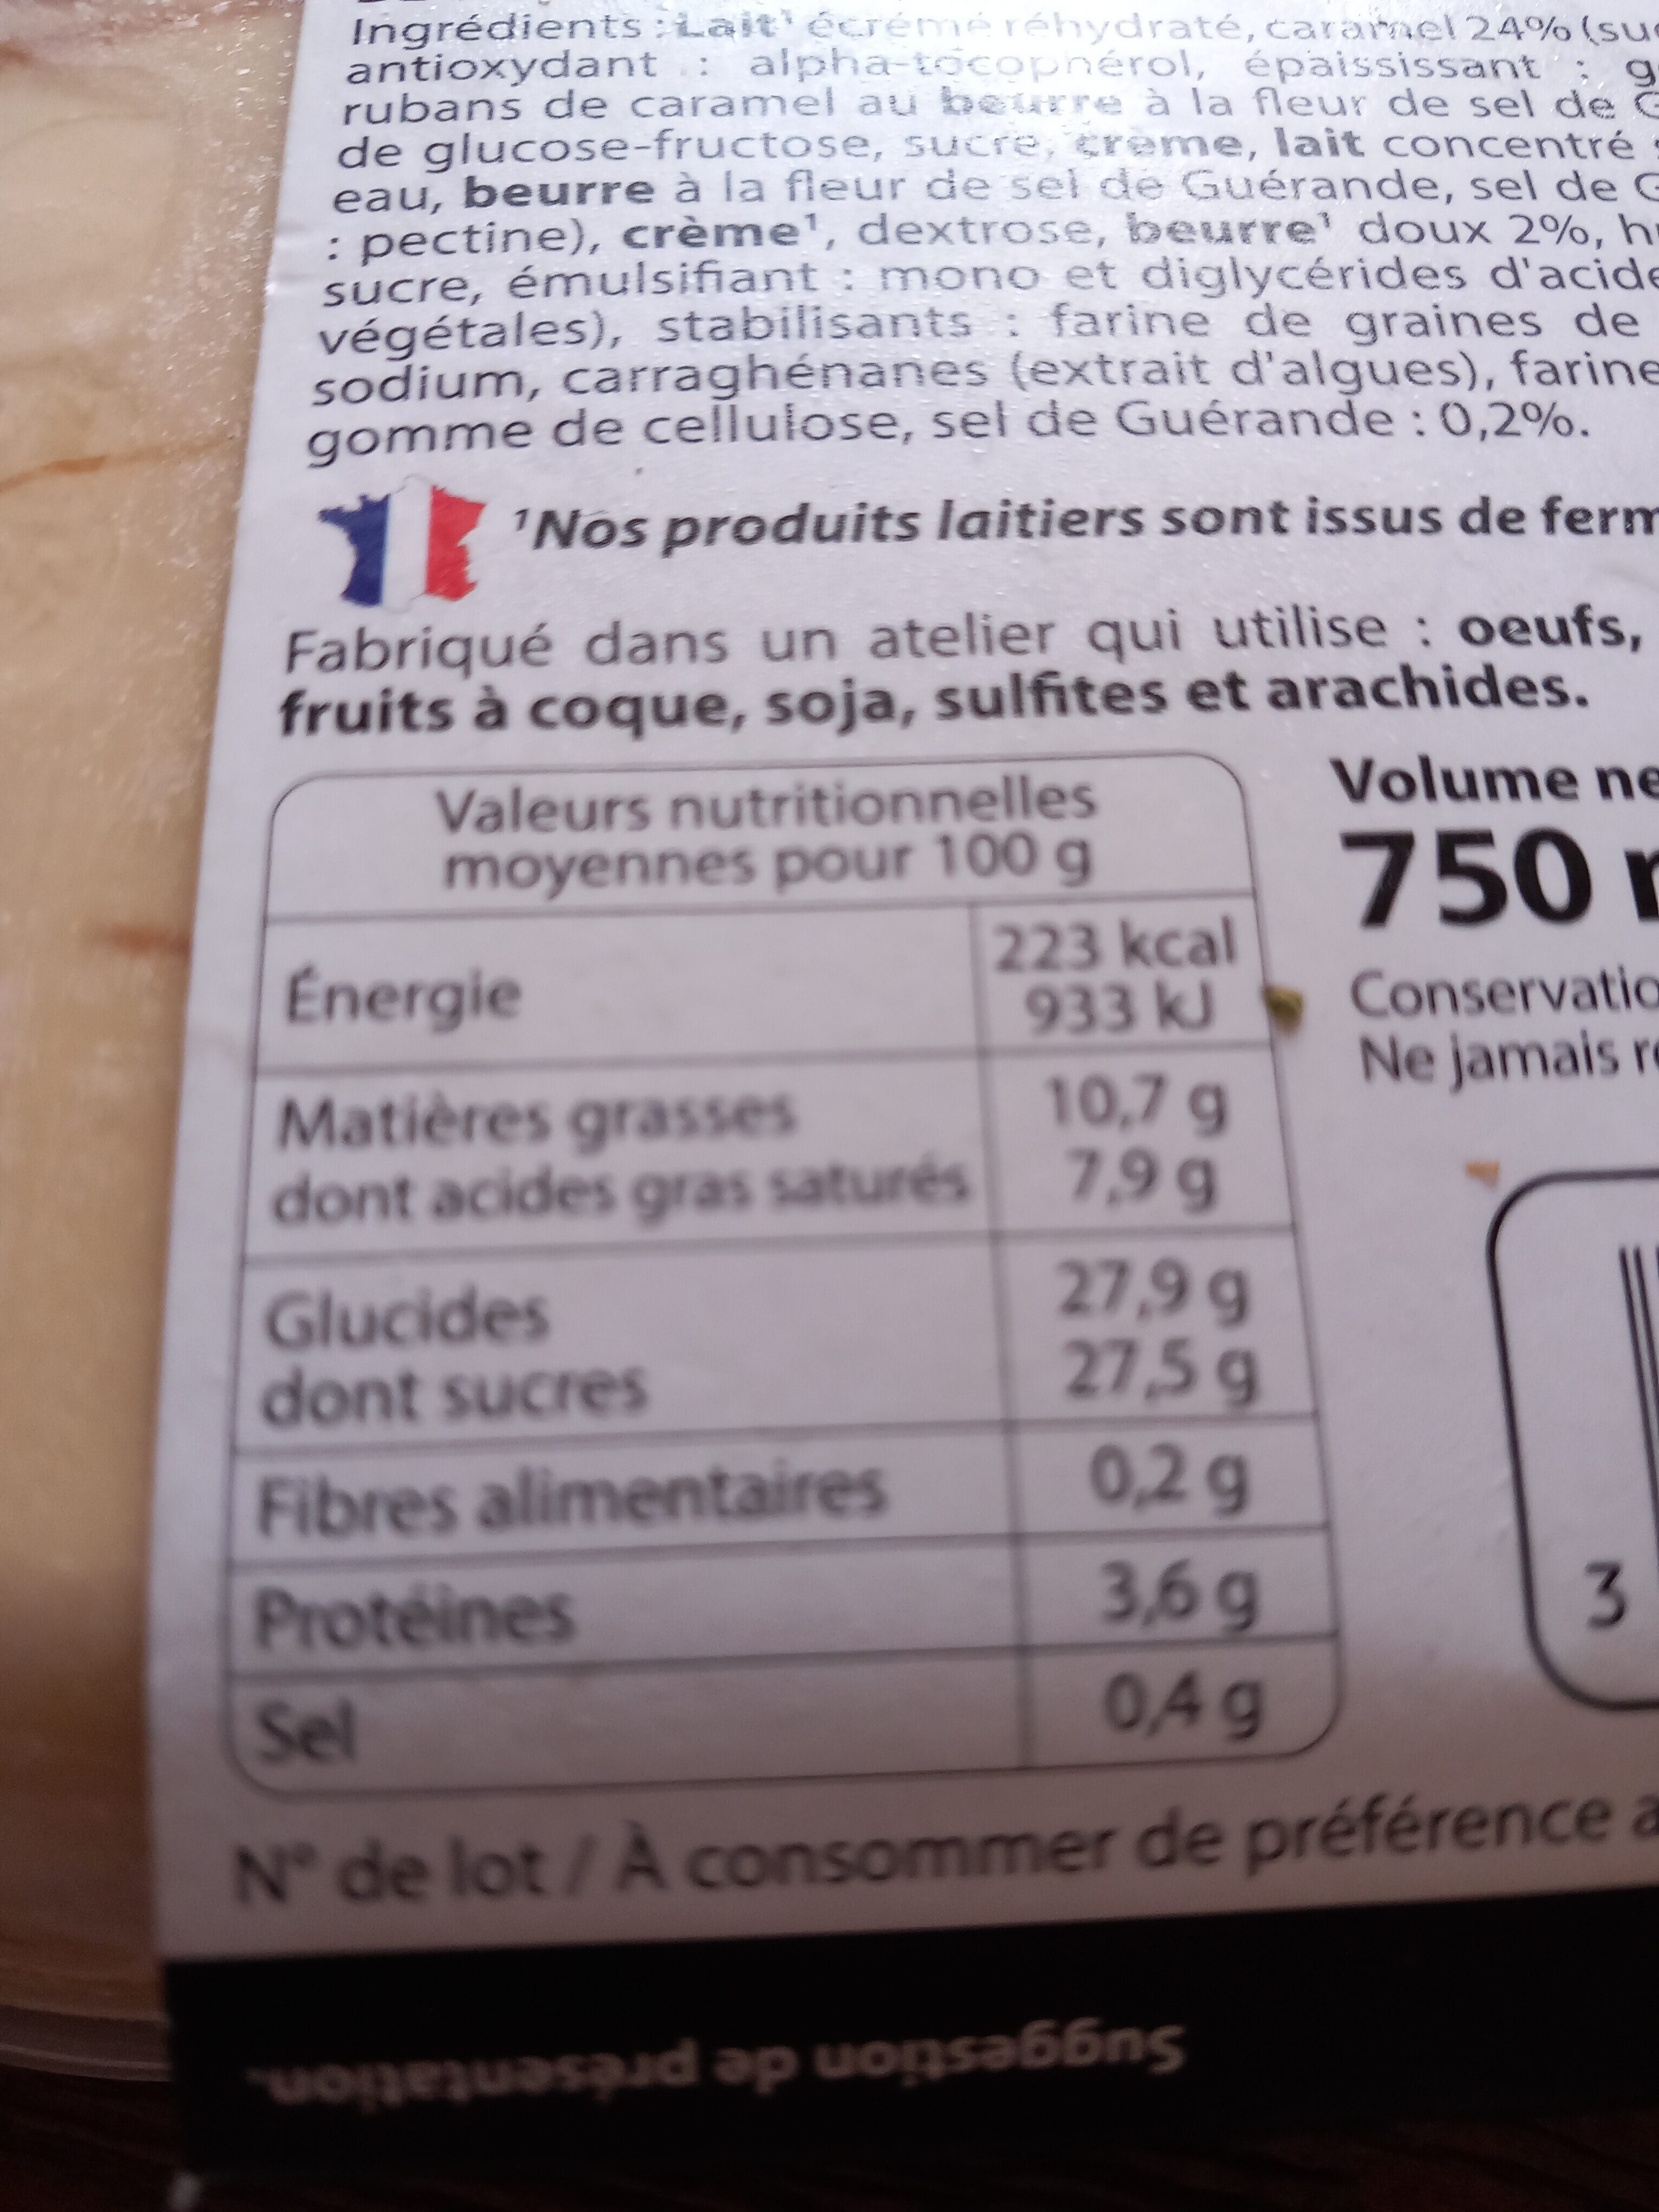 Glace CARAMEL, au beurre & au sel de Guérande, rubans de caramel au beurre salé - Nutrition facts - fr